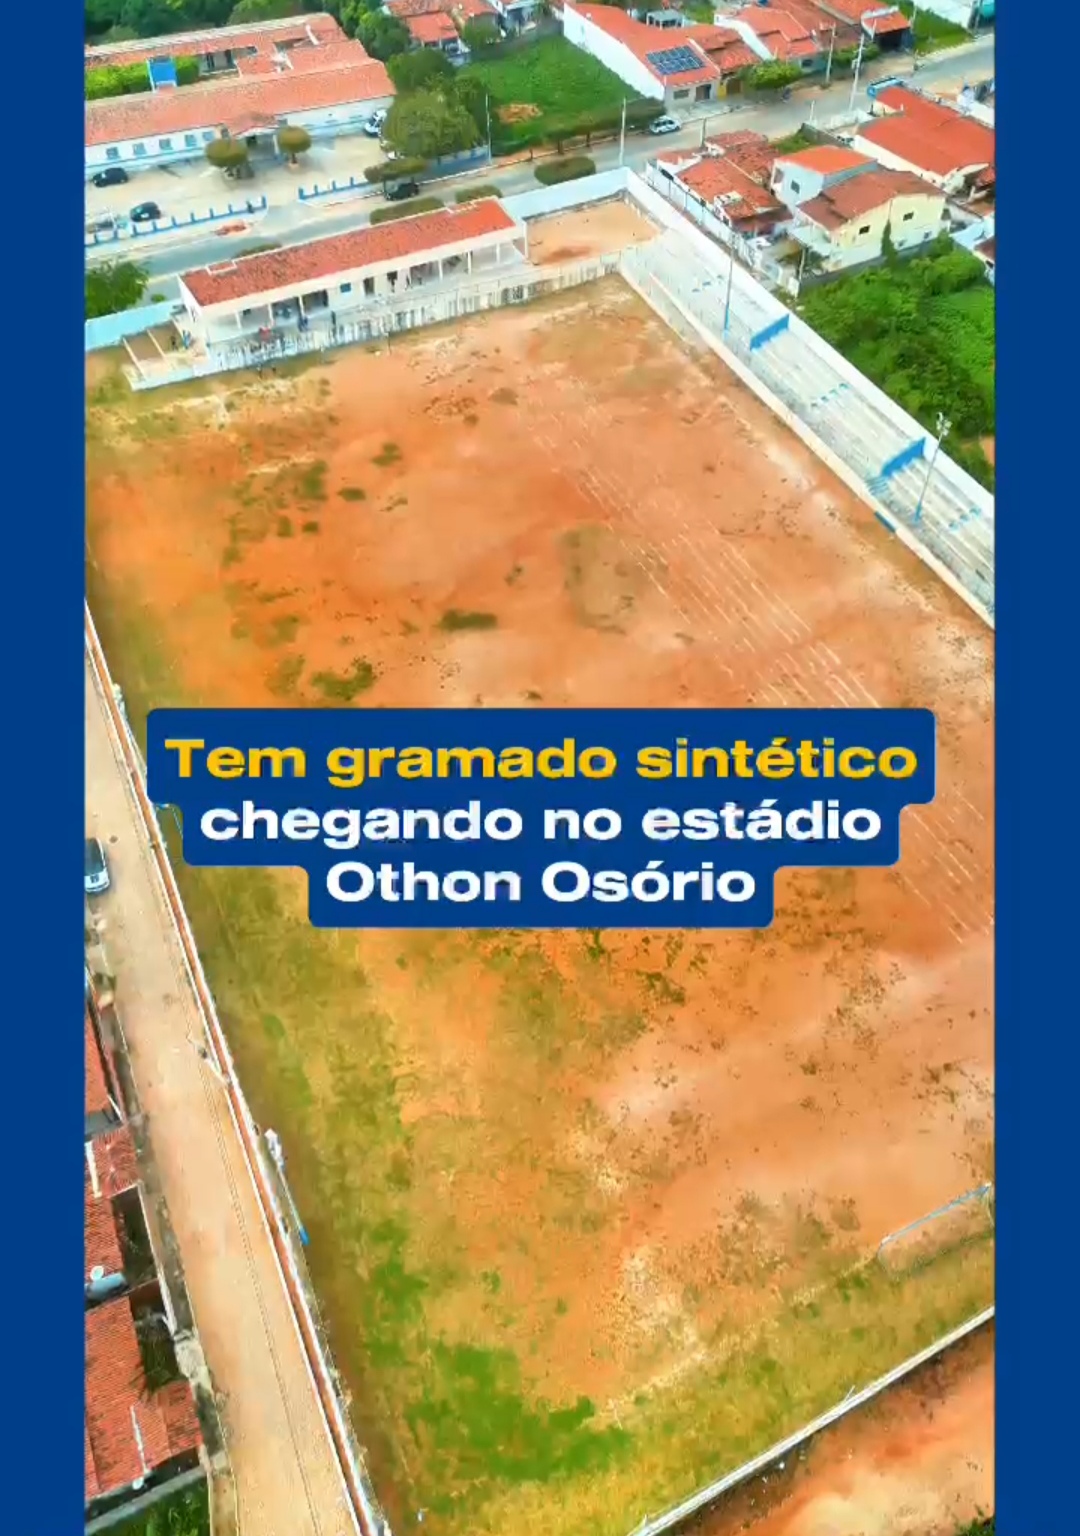 Prefeito de Cerro Corá assina ordem de serviço para gramar o estádio (Vídeo)